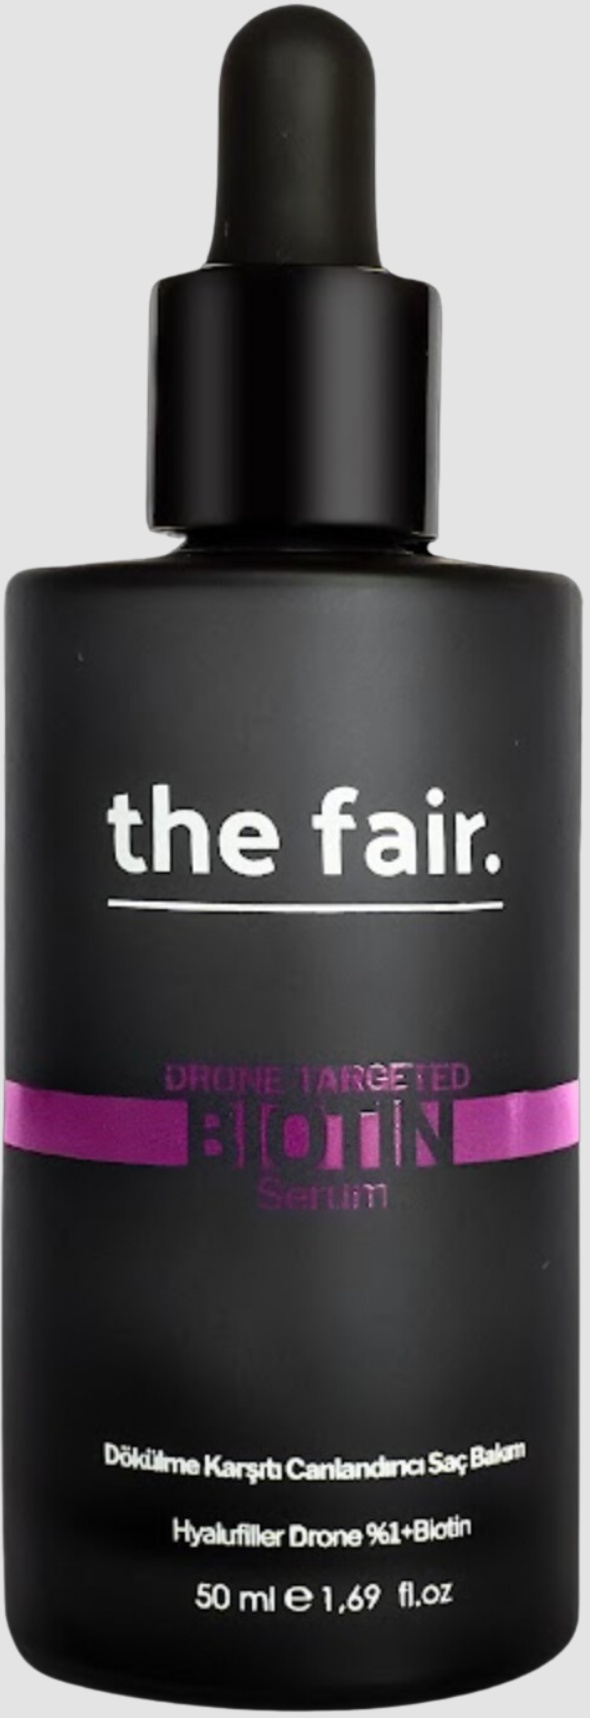 The fair the fair. Drone Targeted Anti-hair Loss Biotin Serum